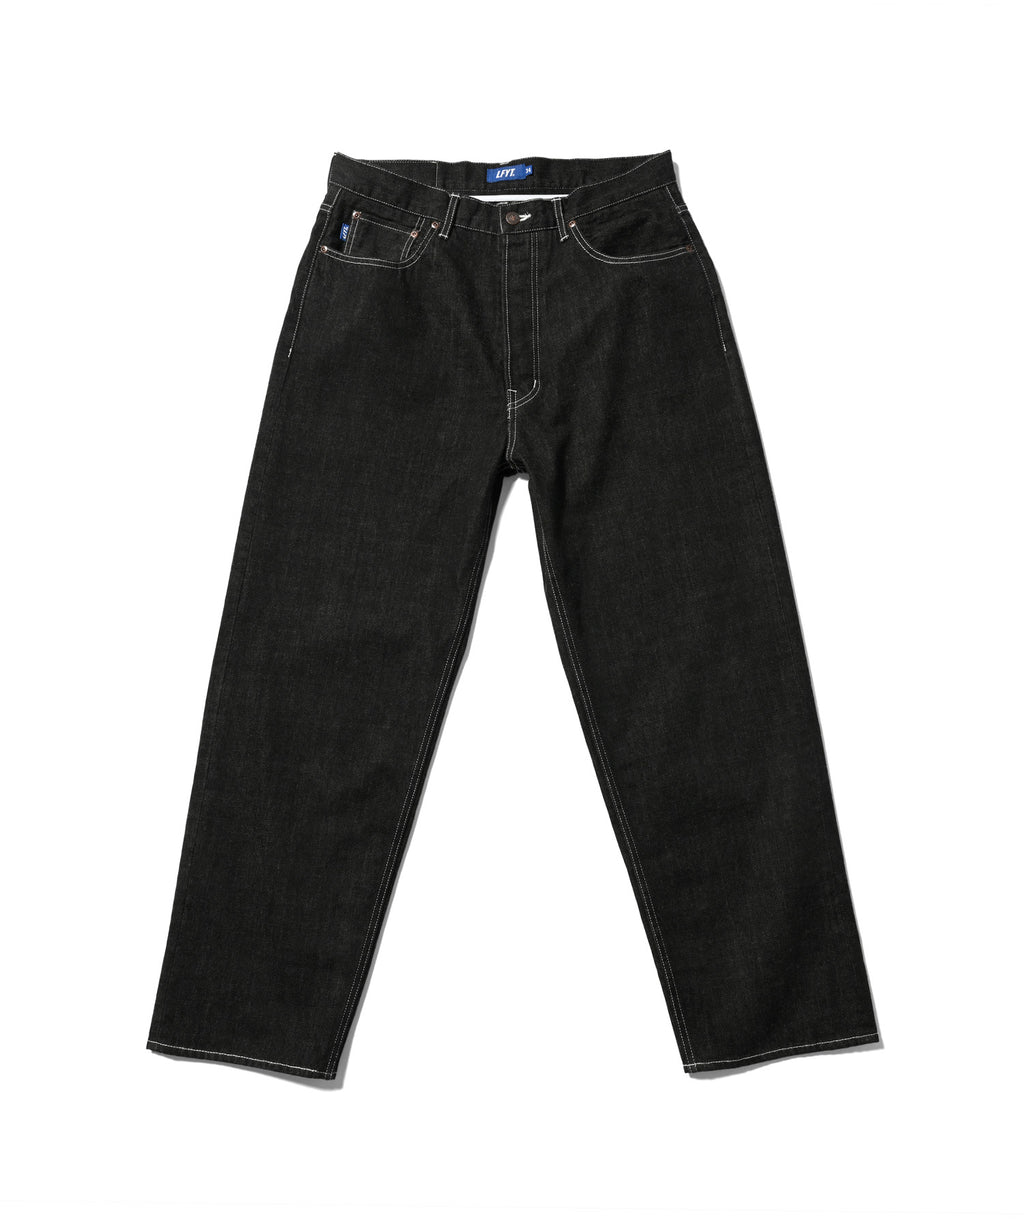 LFYT 5 口袋水洗牛仔長褲 寬鬆版型 白色縫線 LS231106